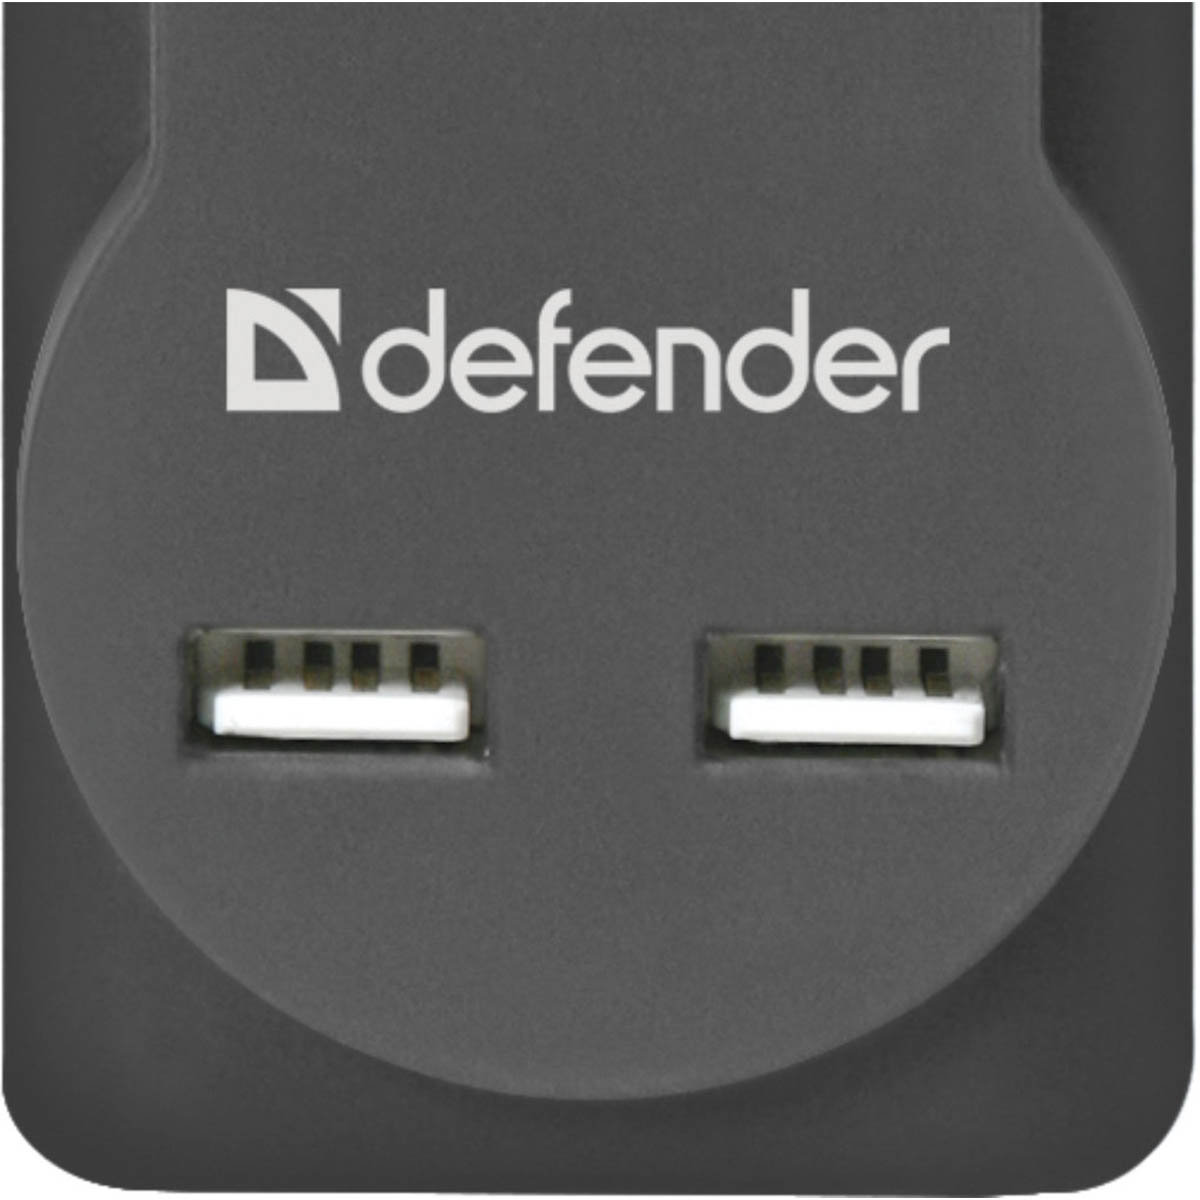 Сетевой фильтр Defender DFS 753, 3.0 метра, 5 розеток, 2 USB, 2.1A, цвет черный